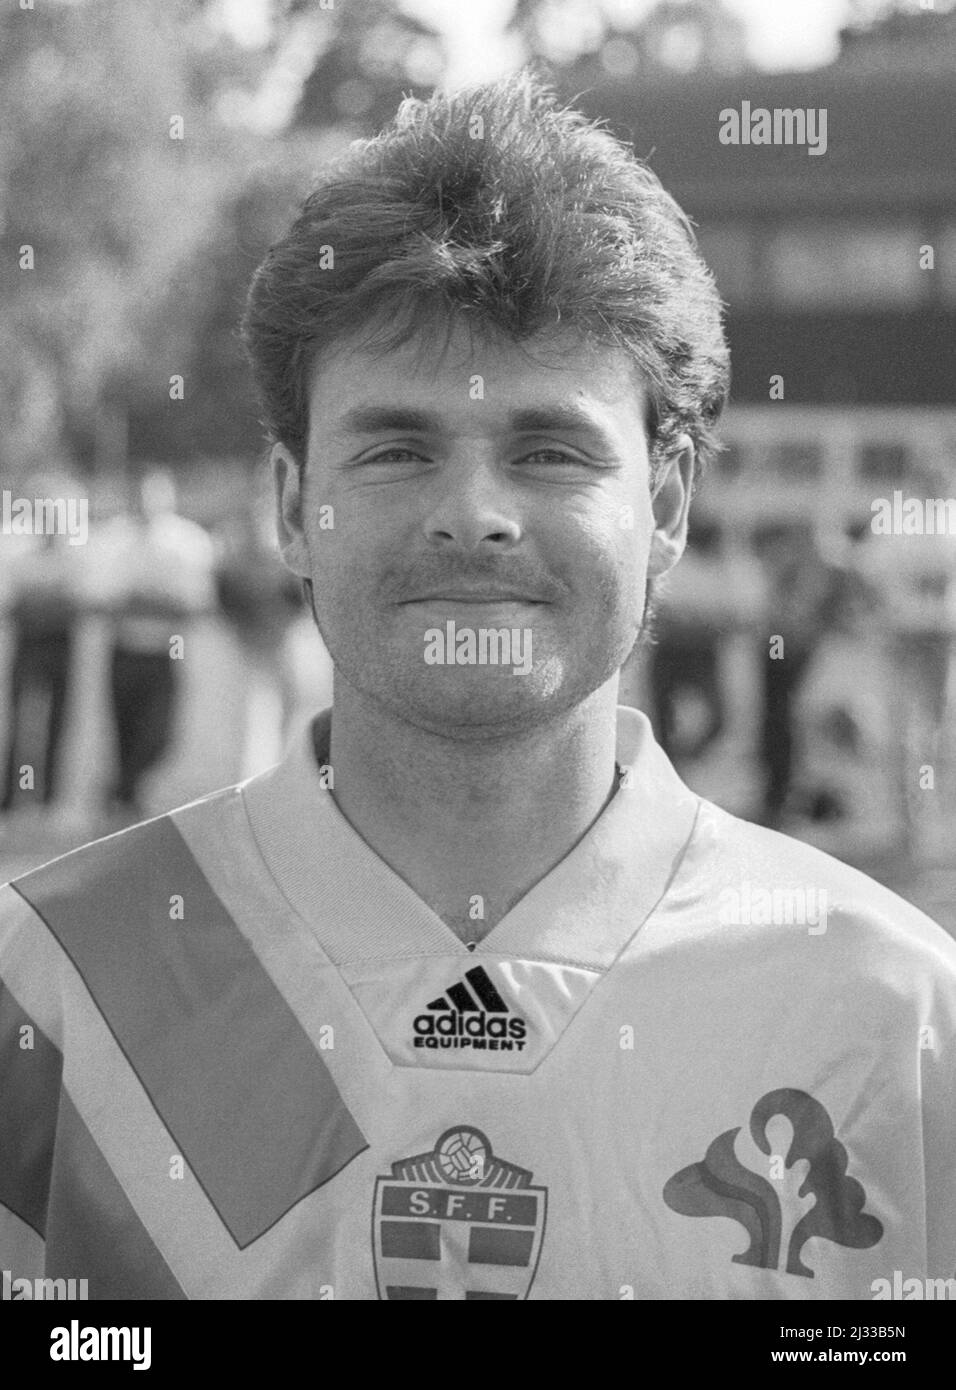 ANDERS LIMPAR Football Arsenal e la nazionale svedese al campionato europeo di calcio 1992 Foto Stock